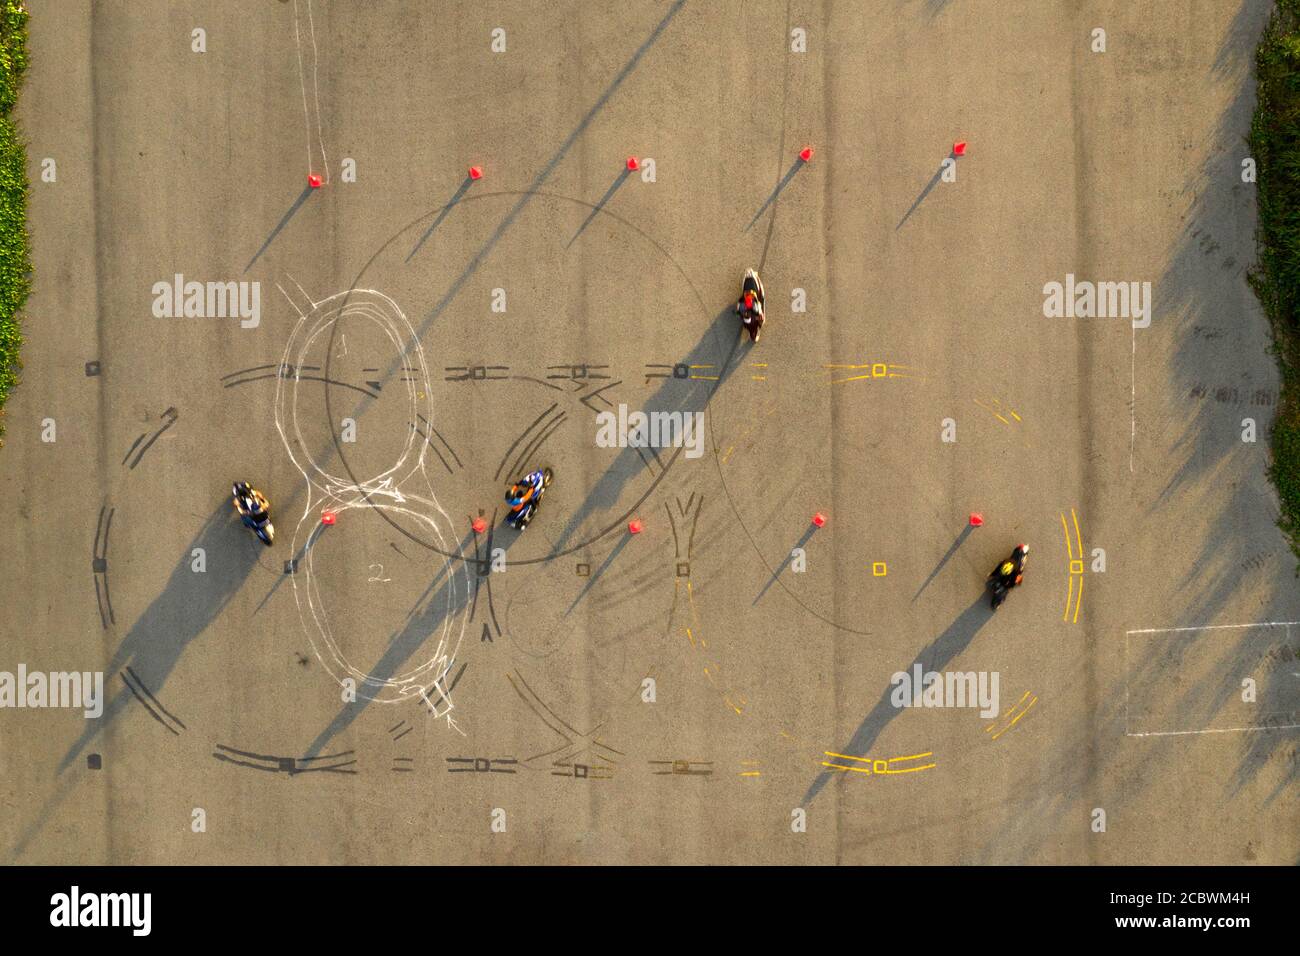 Von oben nach unten breite Luftaufnahme von vier Fahrern, die Spaß auf einem fortgeschrittenen Motorrad-Slalom-Kurs zwischen orangen Kegeln mit langen Schatten haben, bemalt Stockfoto